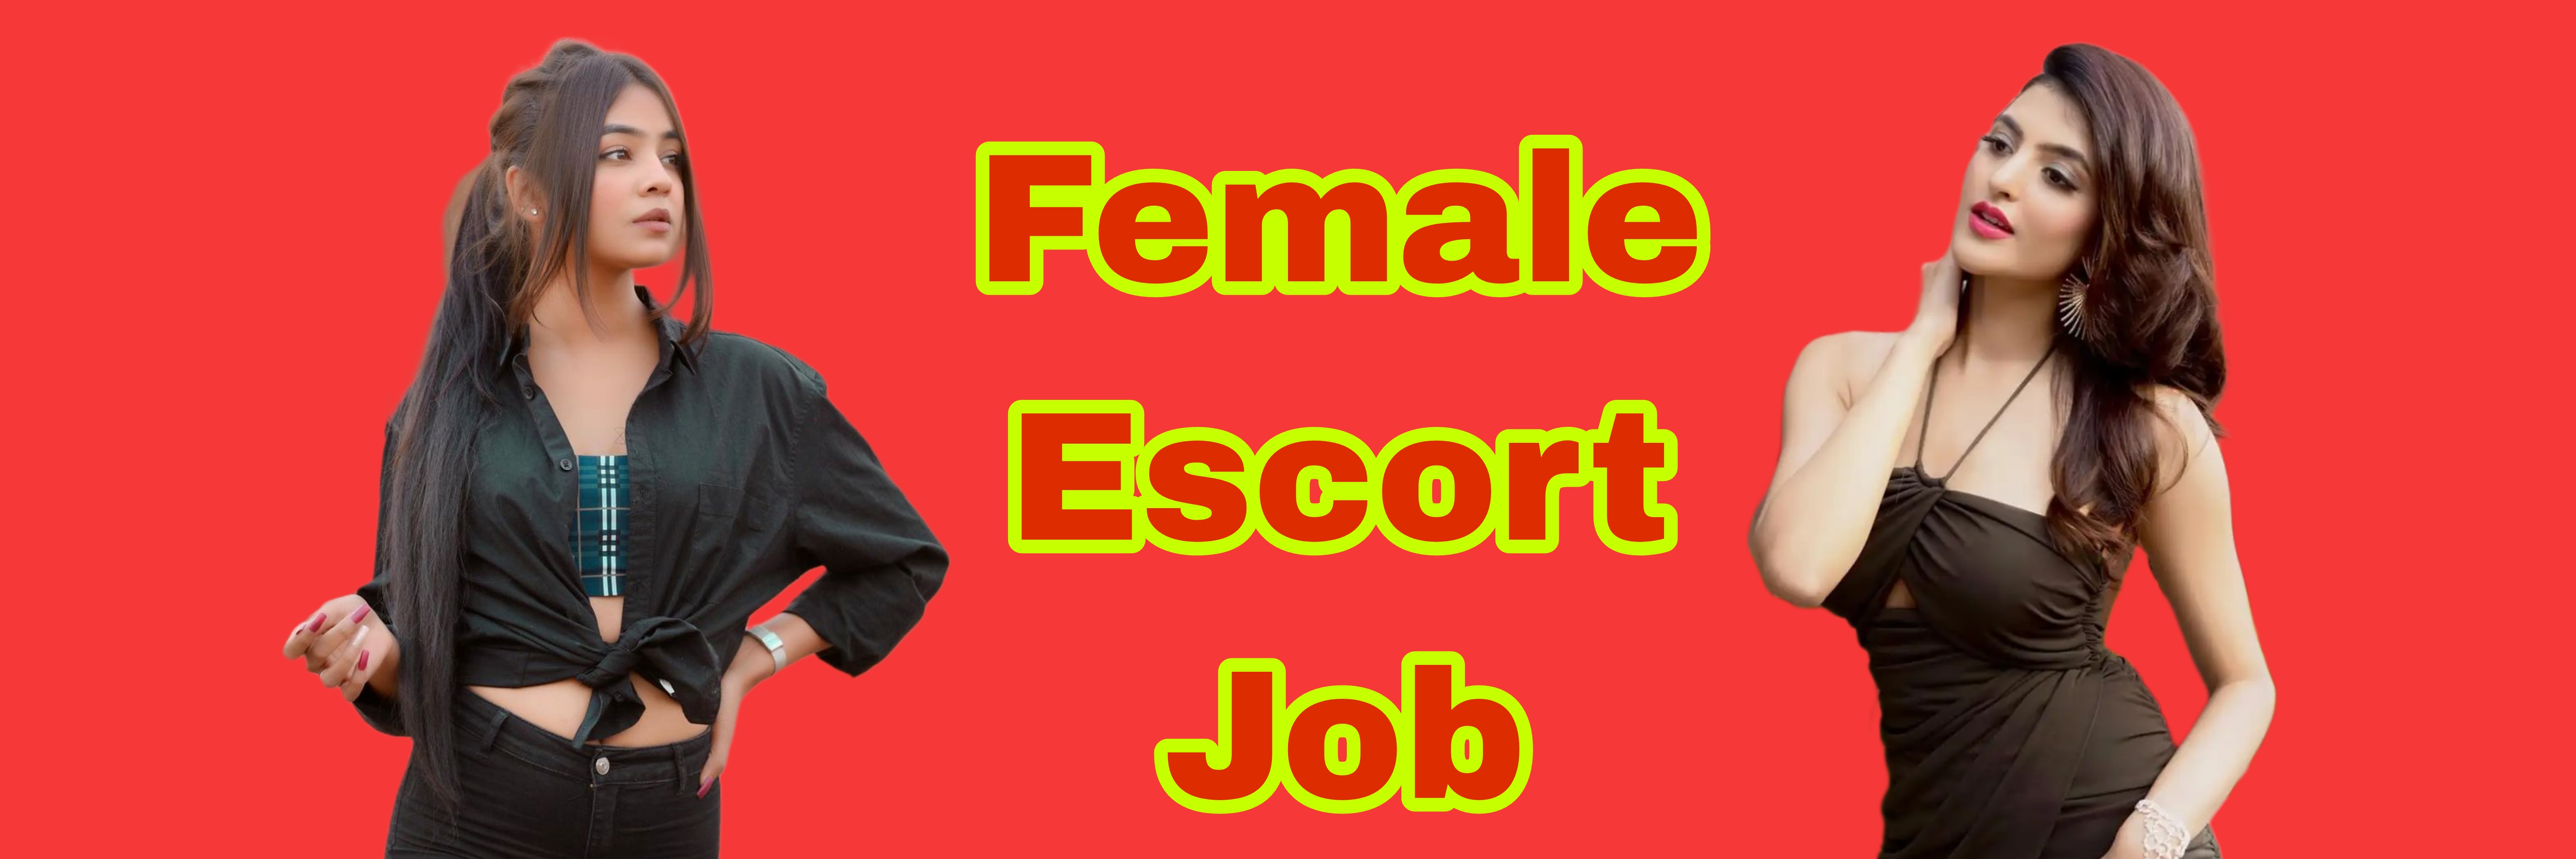 Female Escort Job